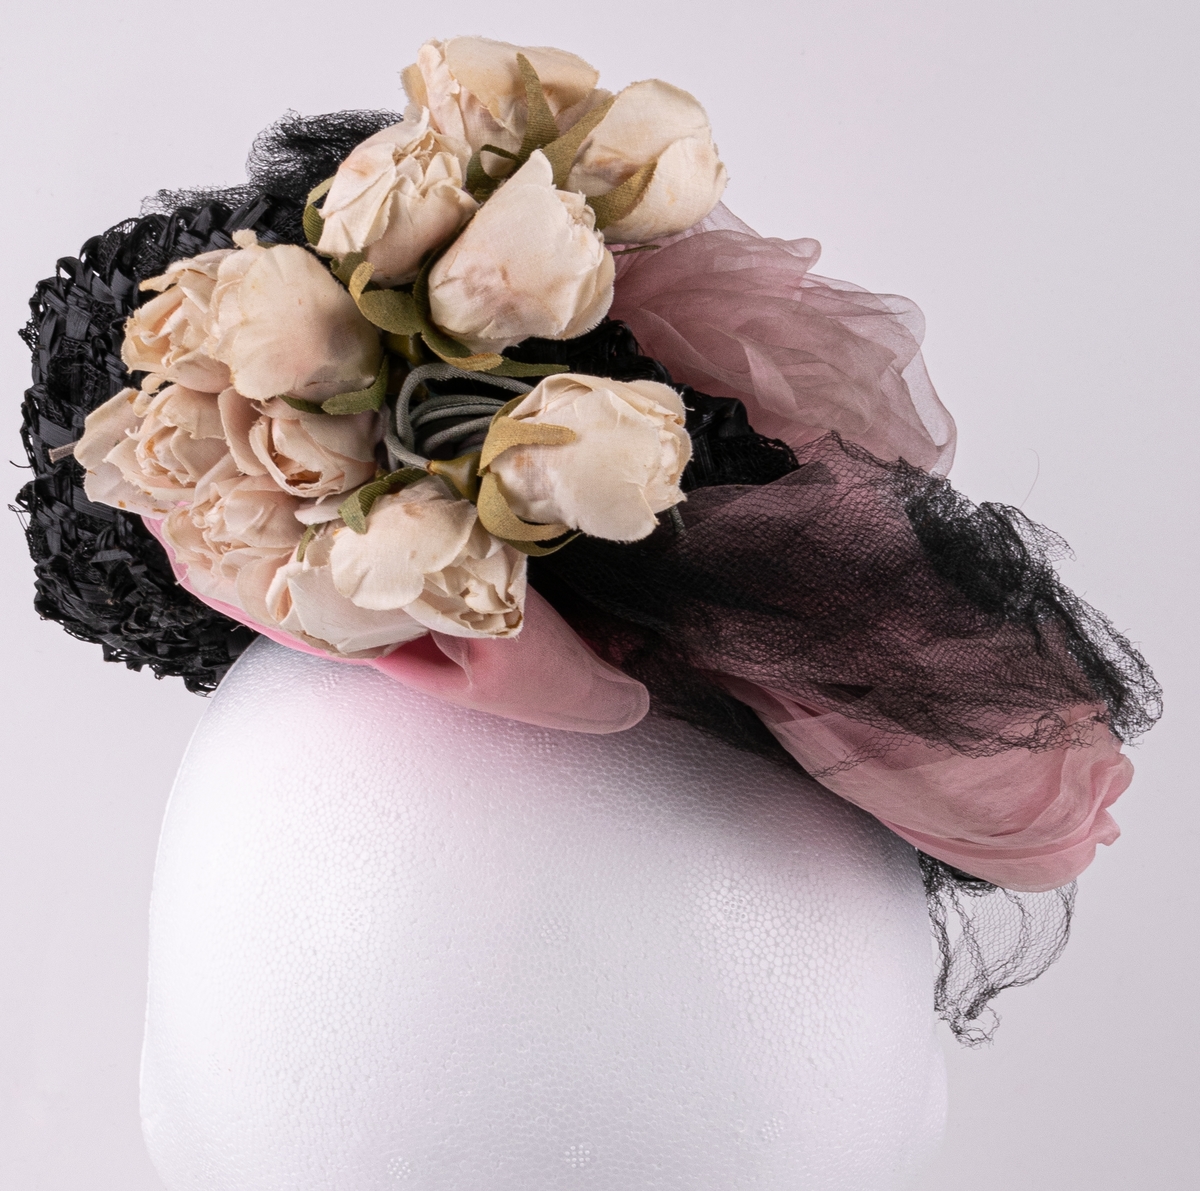 Hatt av svarta pärlor, garnerad med skära rosenknoppar, rosa chiffong, svart tyll och stenkolsspänne.